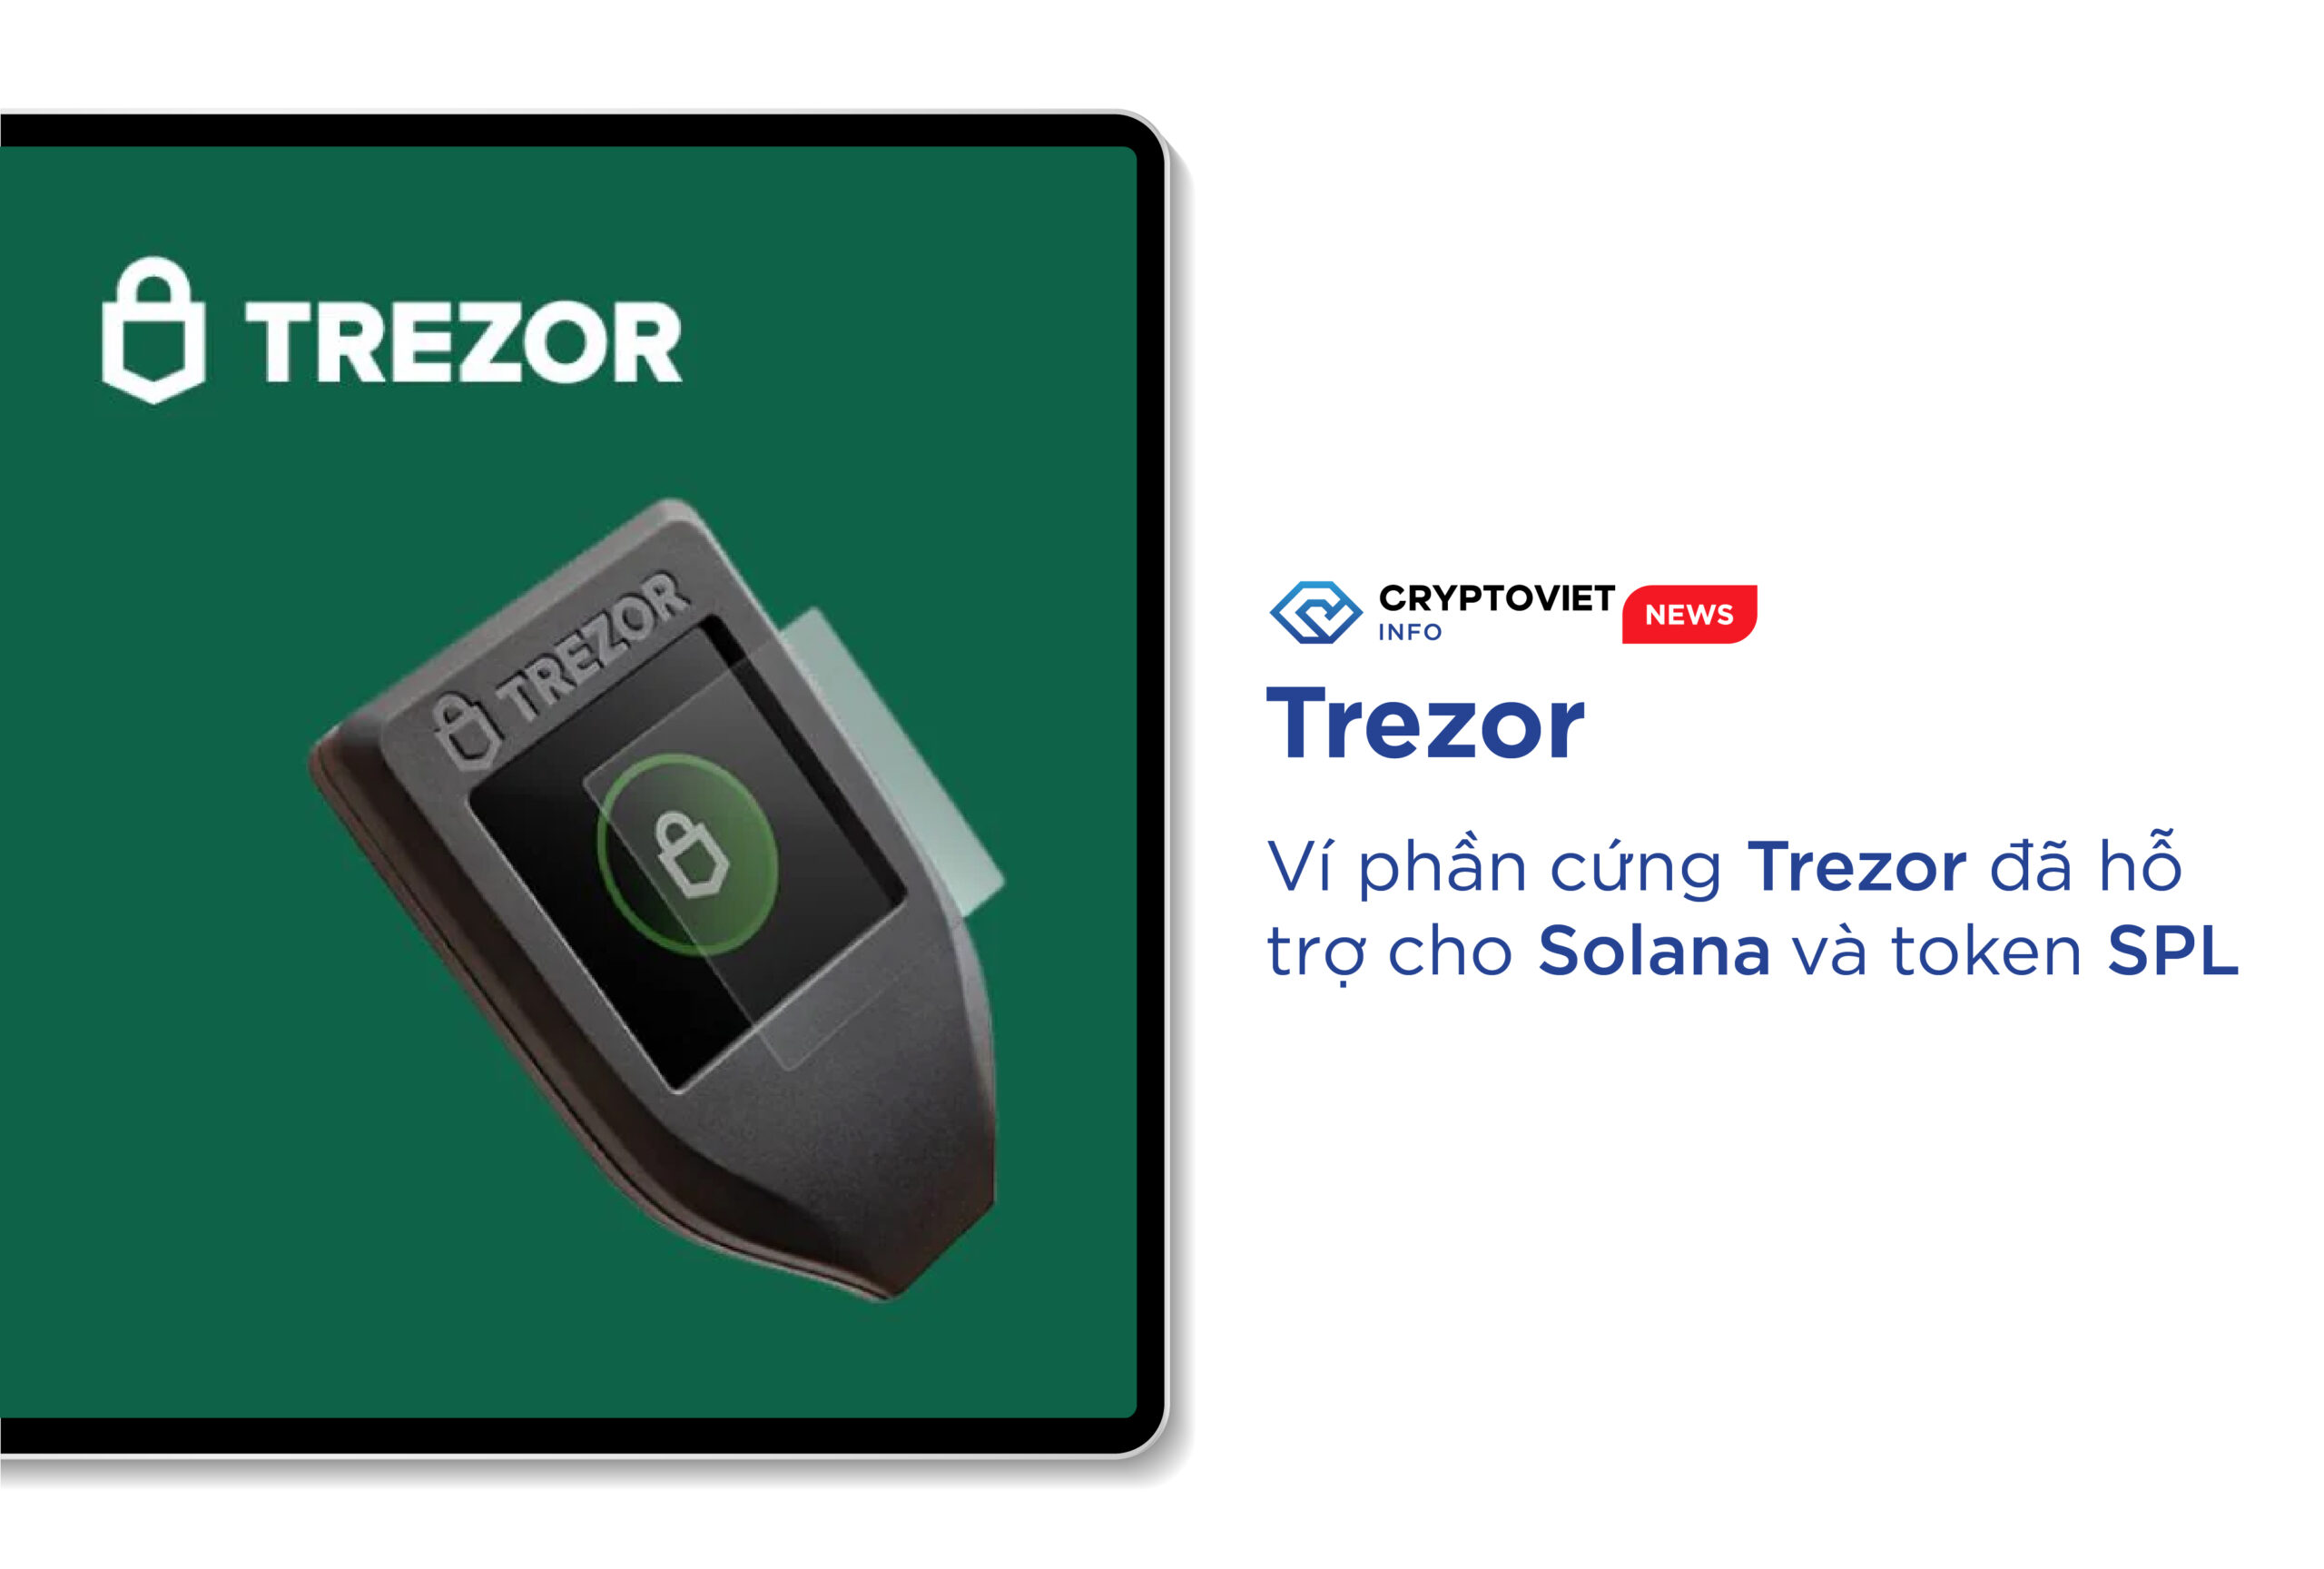 Ví phần cứng Trezor đã hỗ trợ cho Solana và token SPL